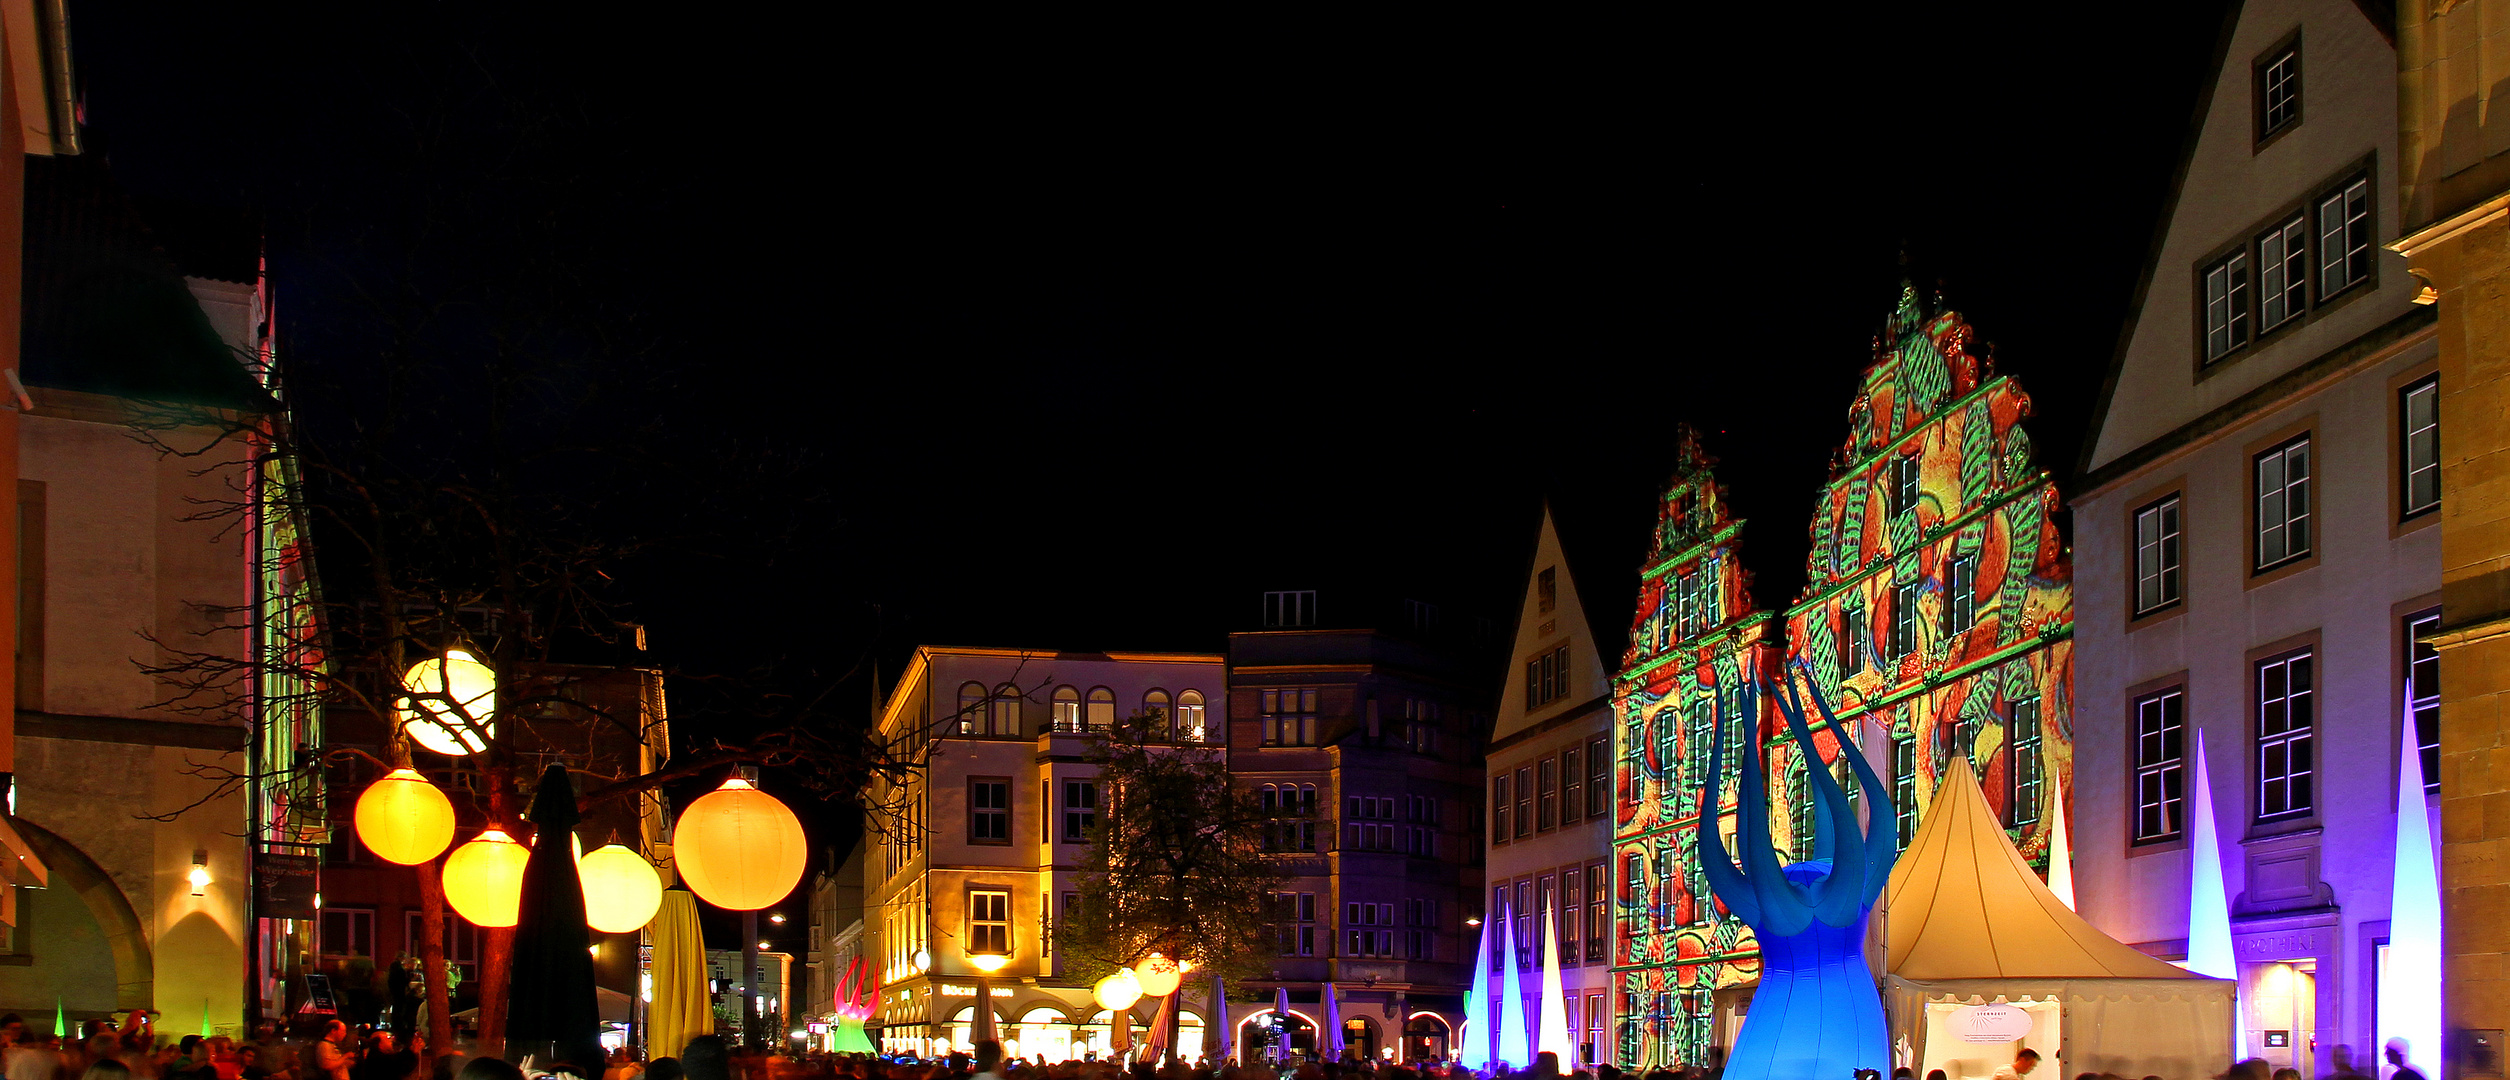 Bielefelder Nachtansichten 2012 - Alter Markt